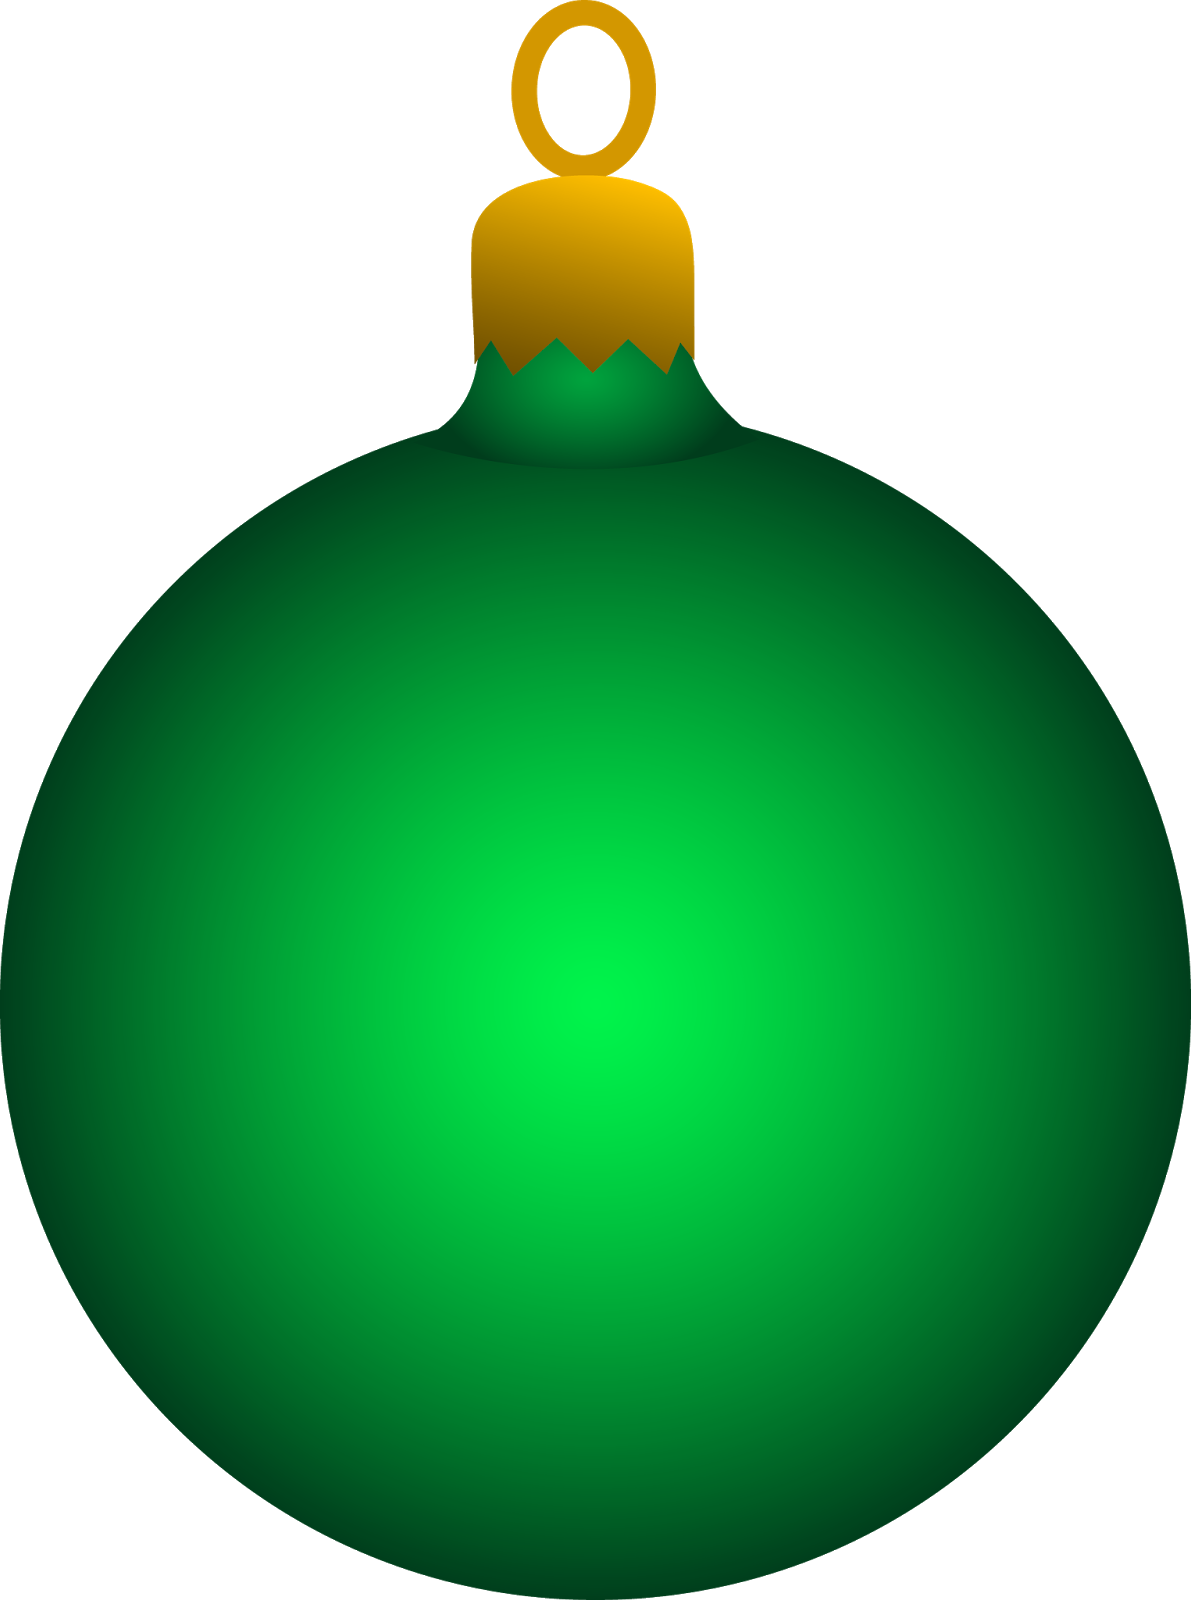 Christmas Balls Ornaments Vec